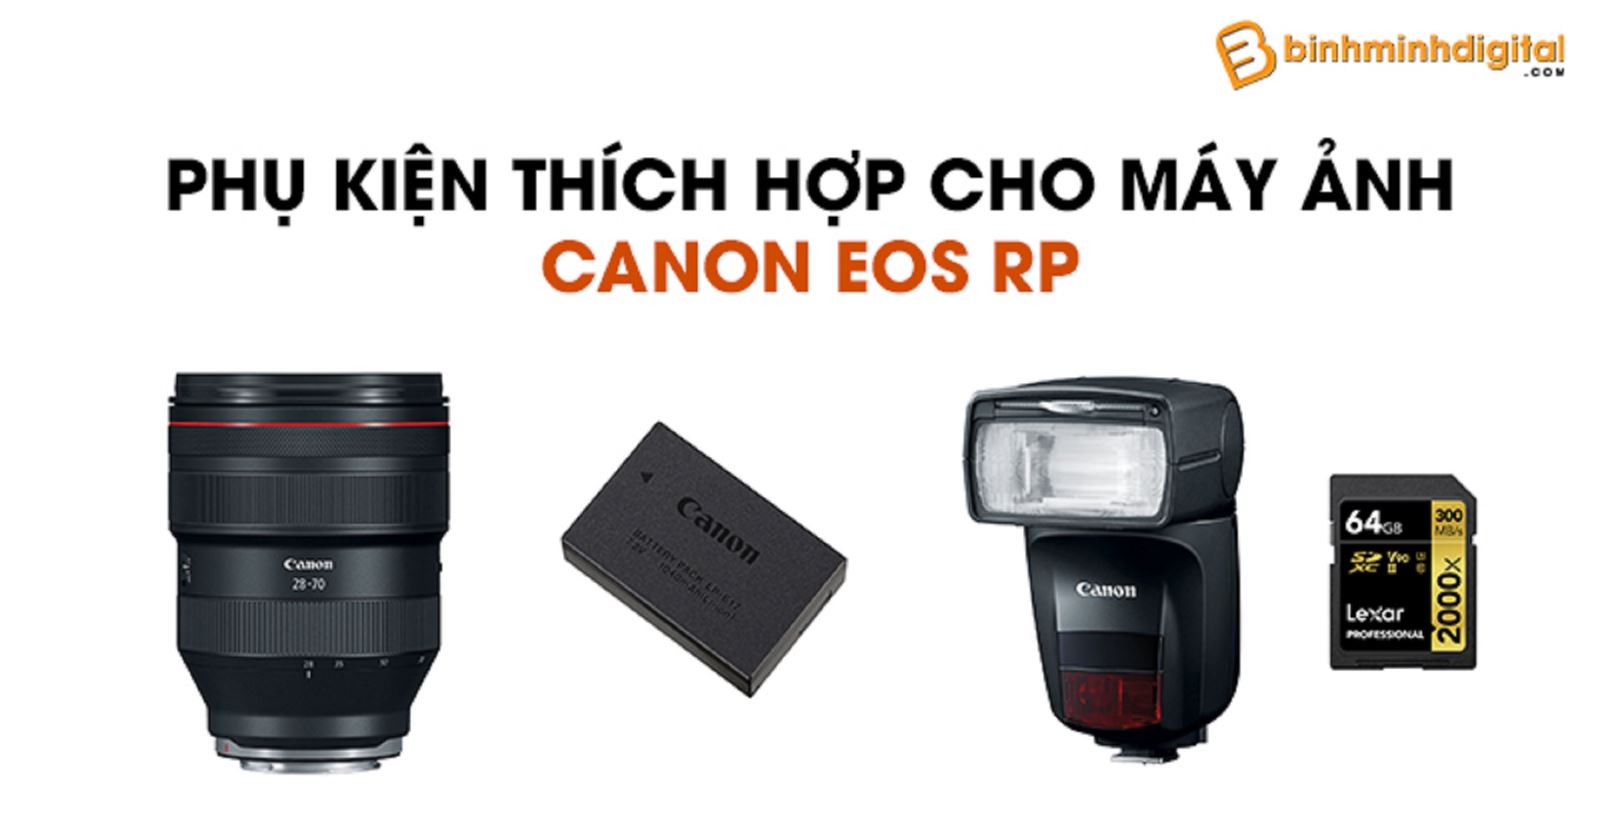 Phụ kiện thích hợp cho máy ảnh Canon EOS RP